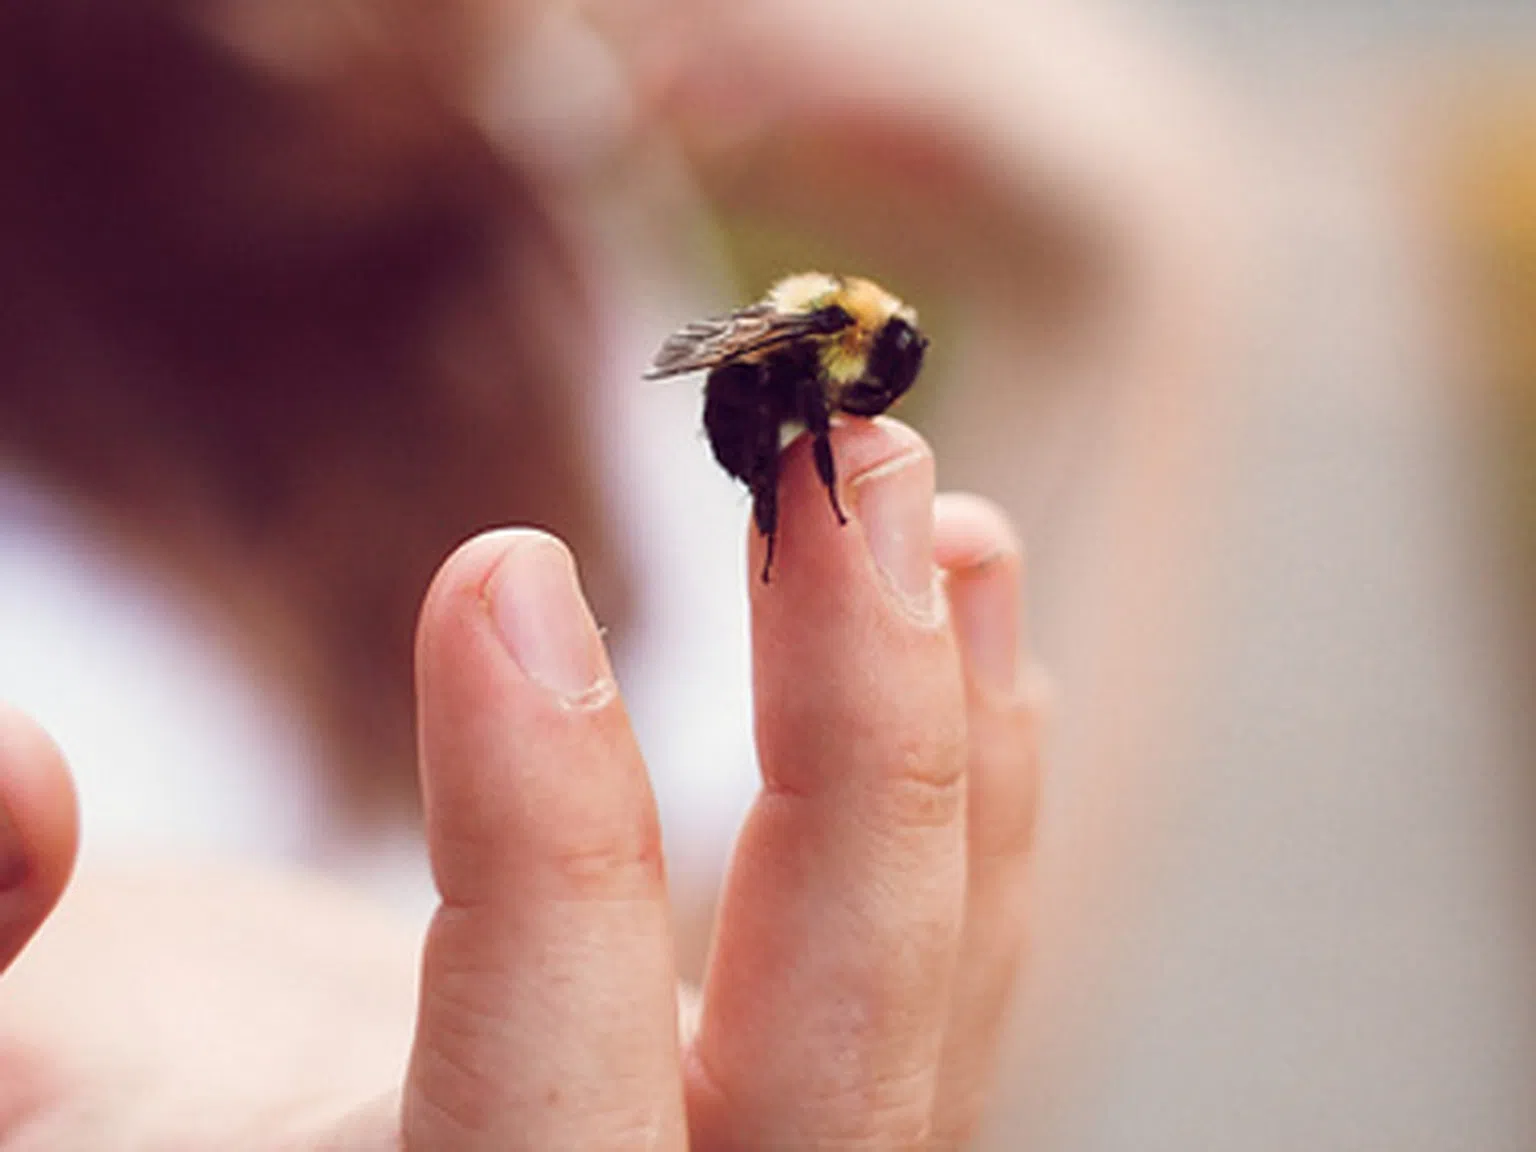 Сезонът на пчелите и осите дойде. Как да се предпазим?